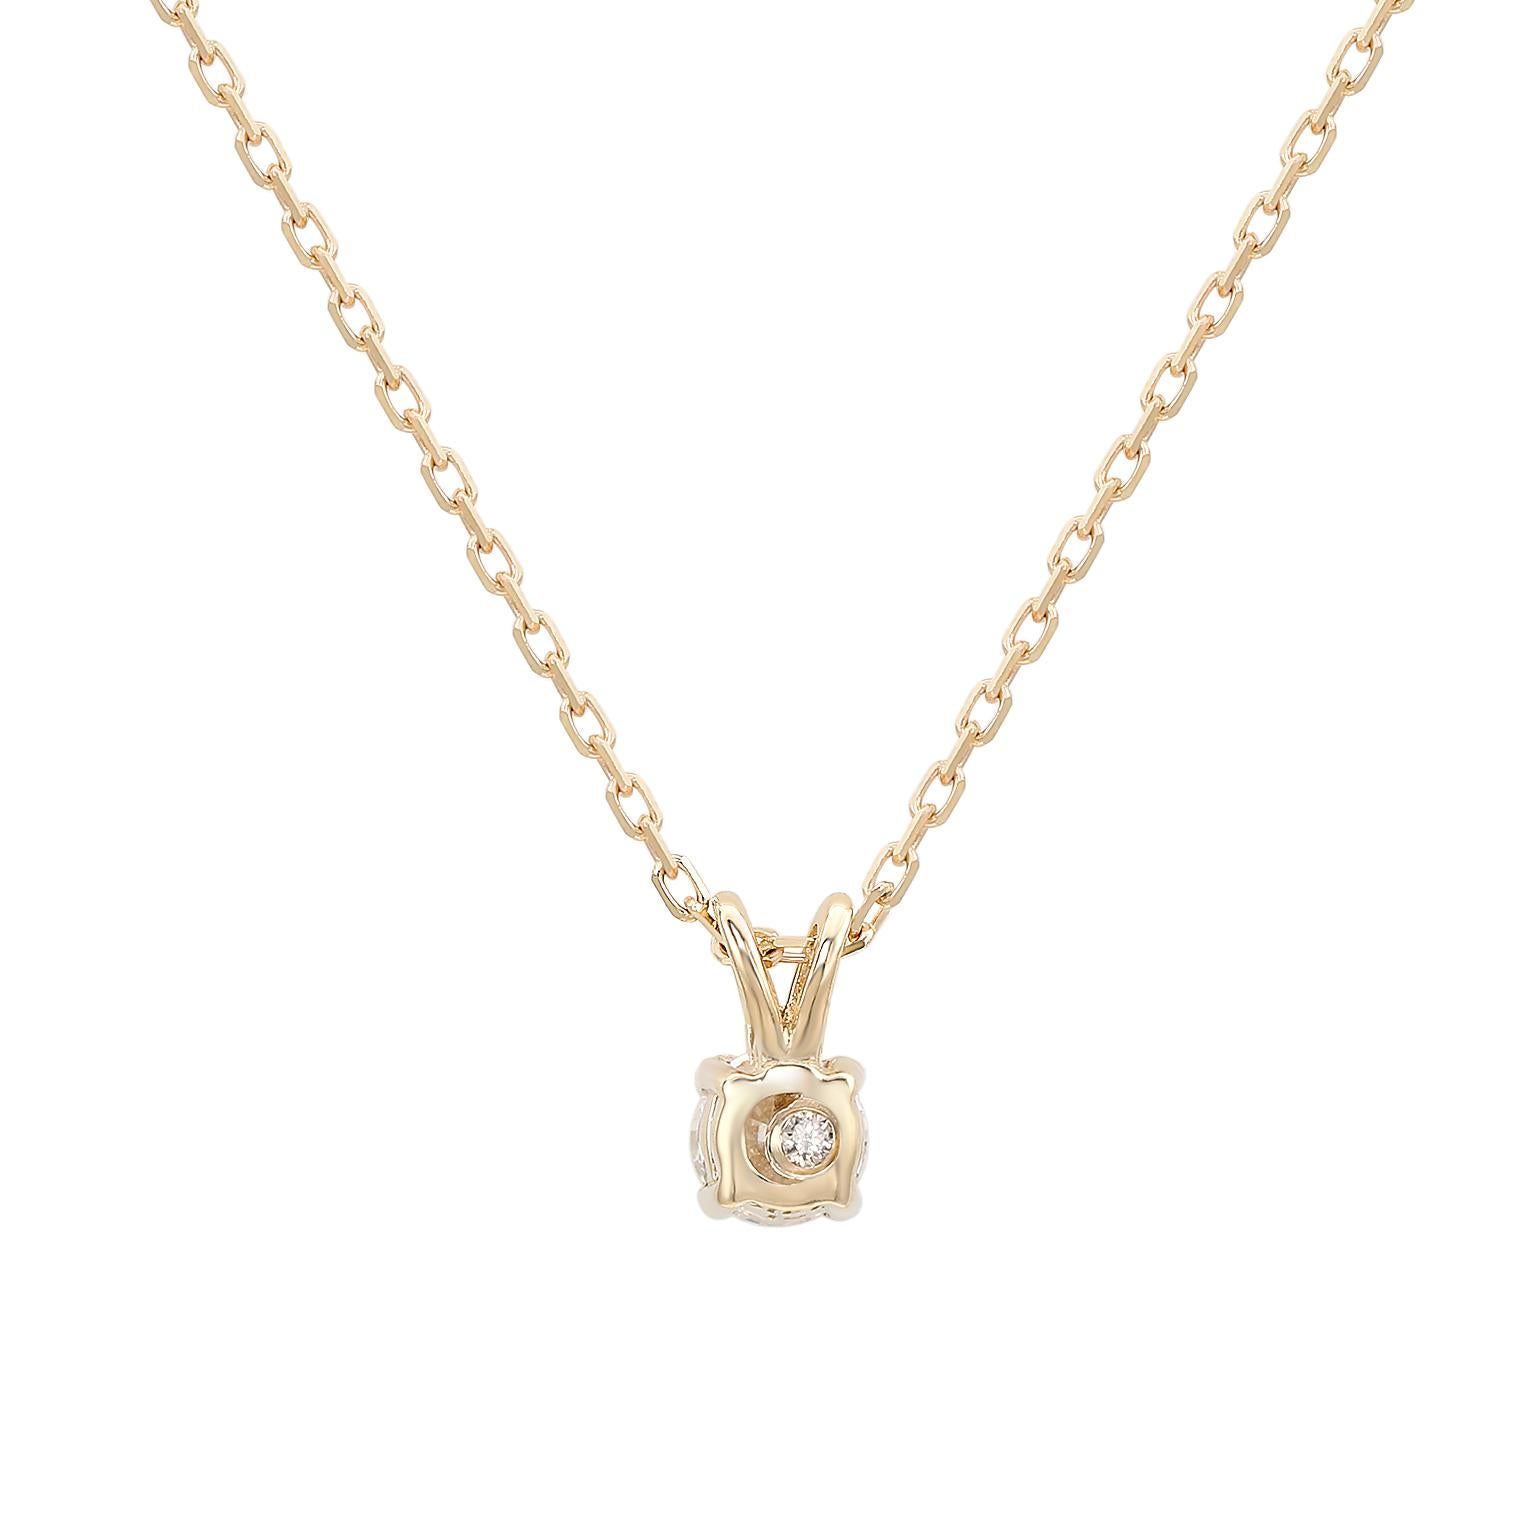 Ajoutez une touche d'élégance à votre tenue avec ce collier solitaire étincelant de Suzy Levian, orné d'un magnifique diamant blanc en serti clos fendu. Les diamants étincelants sont sertis à la main dans de l'or jaune 14 carats, pèsent 0,26ctw et